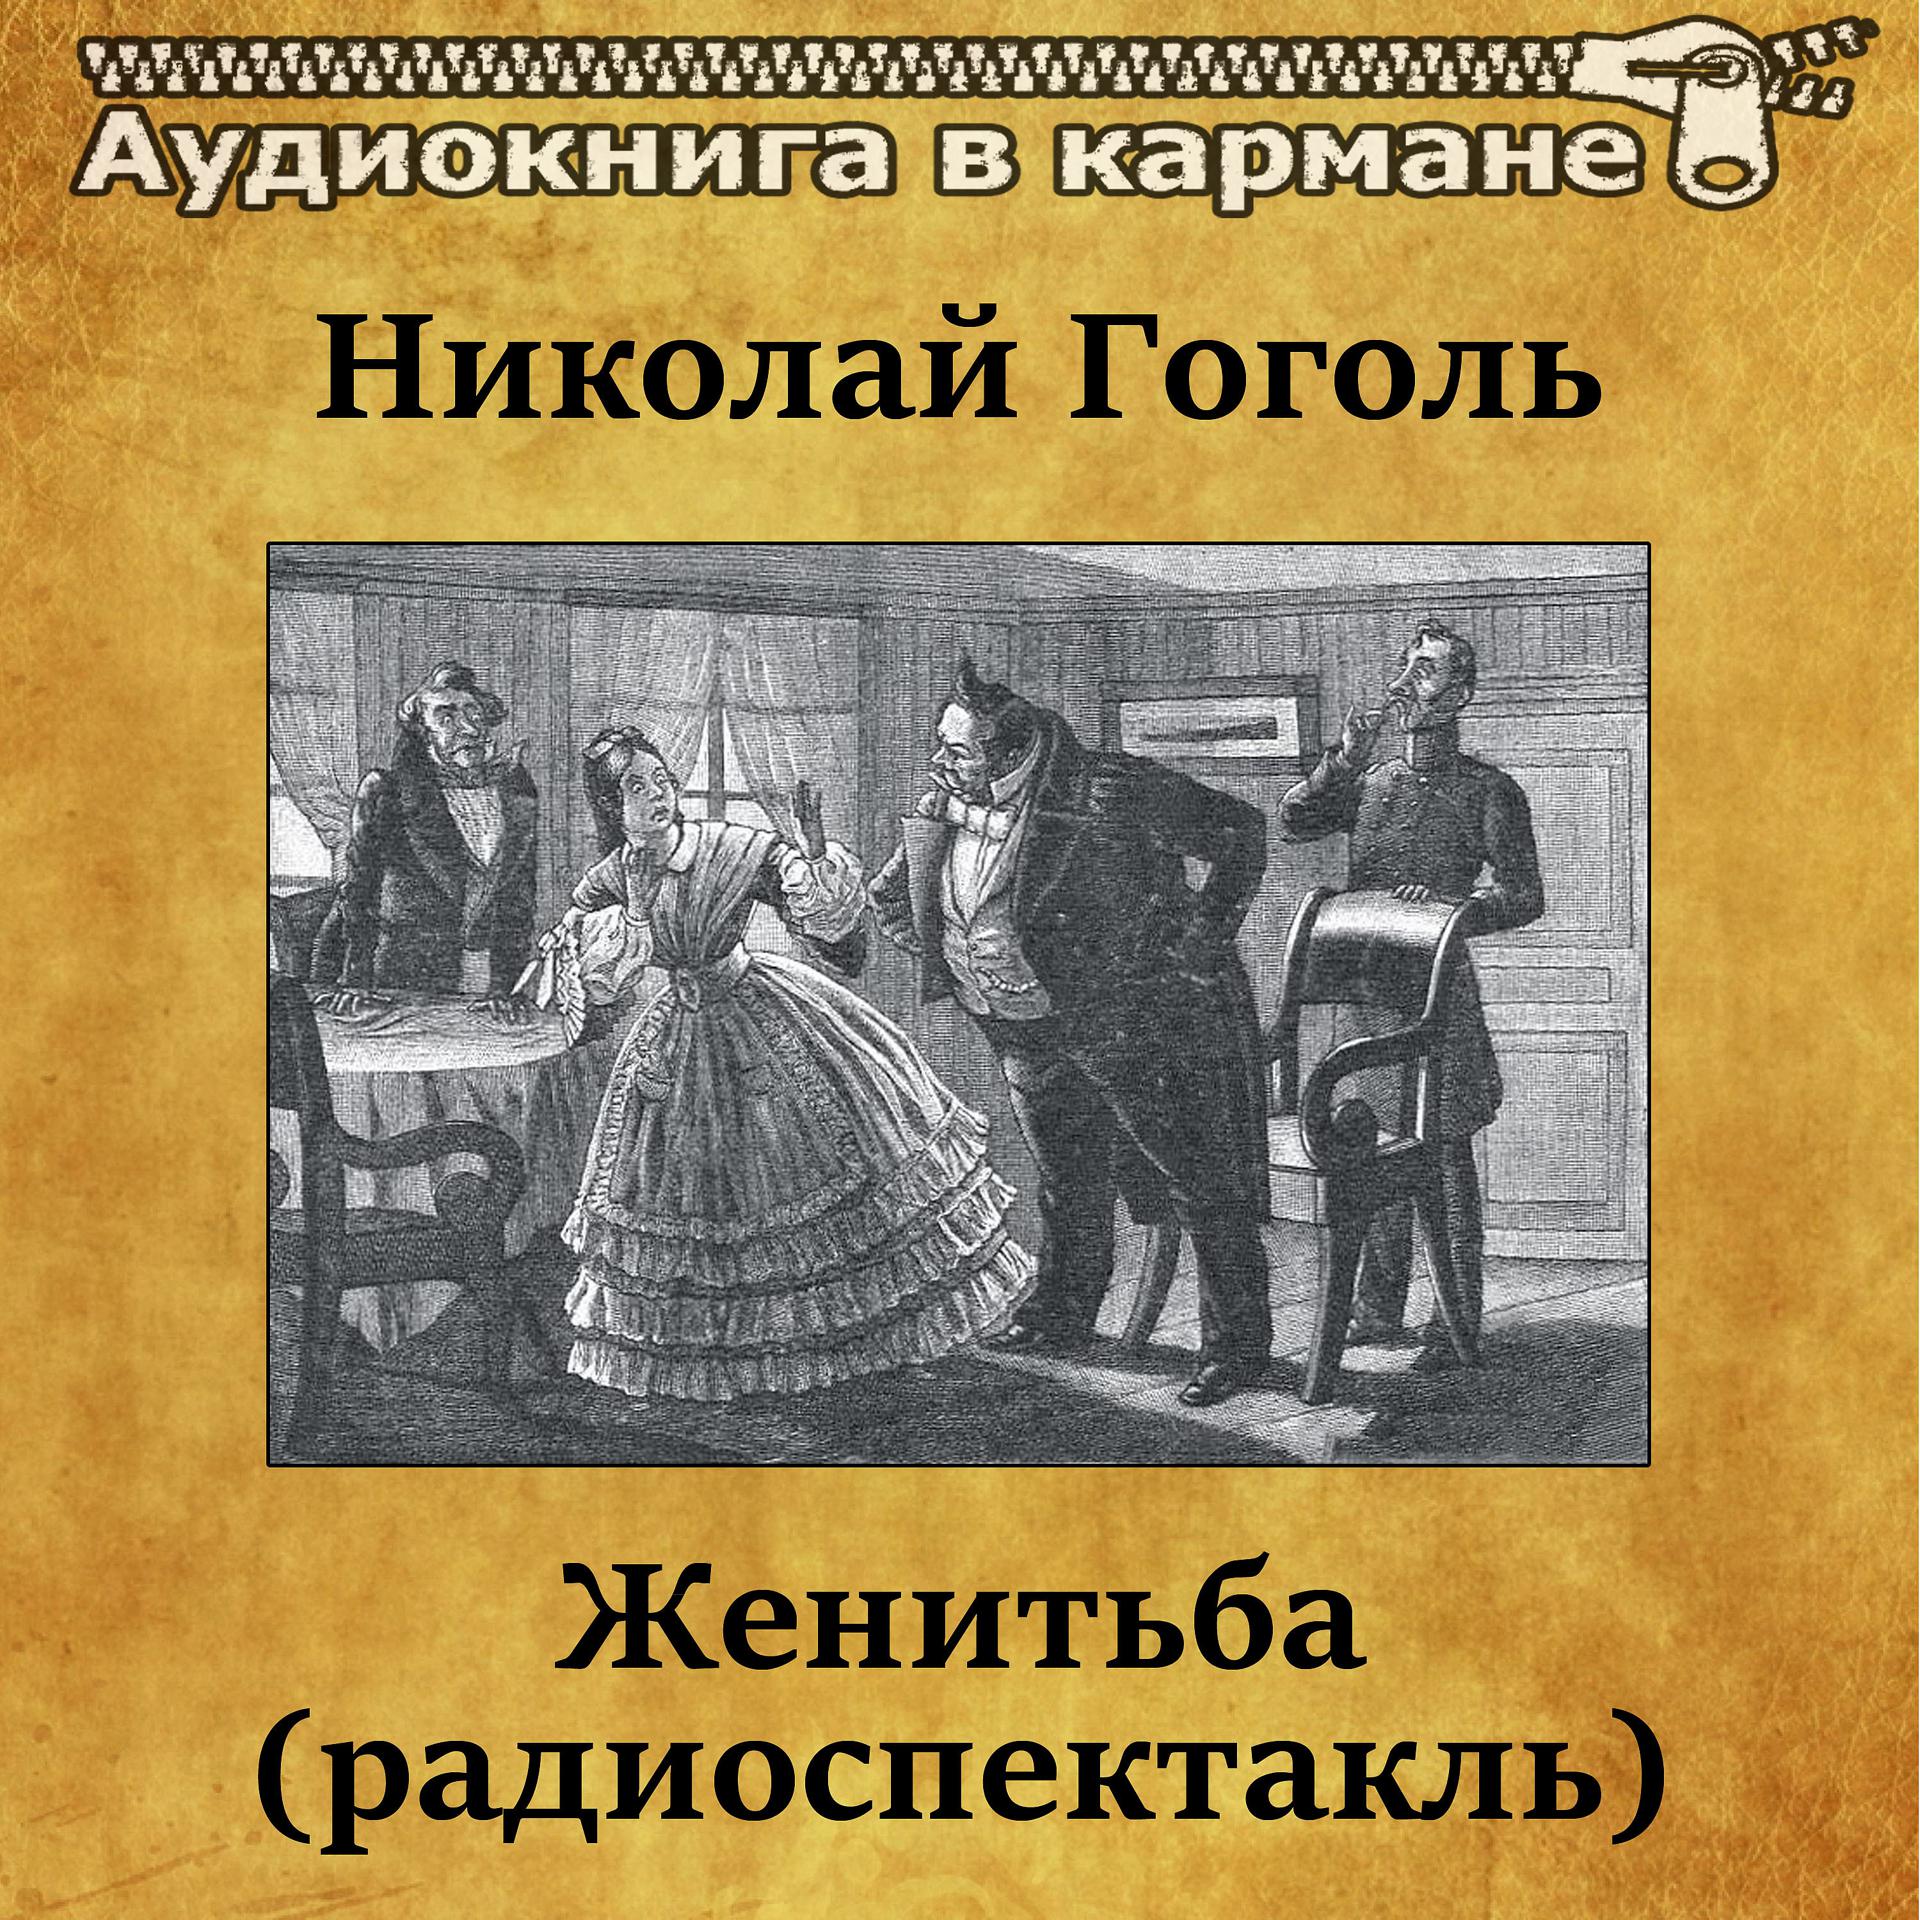 Постер к треку Аудиокнига в кармане, Лев Дуров - Женитьба, Чт. 6